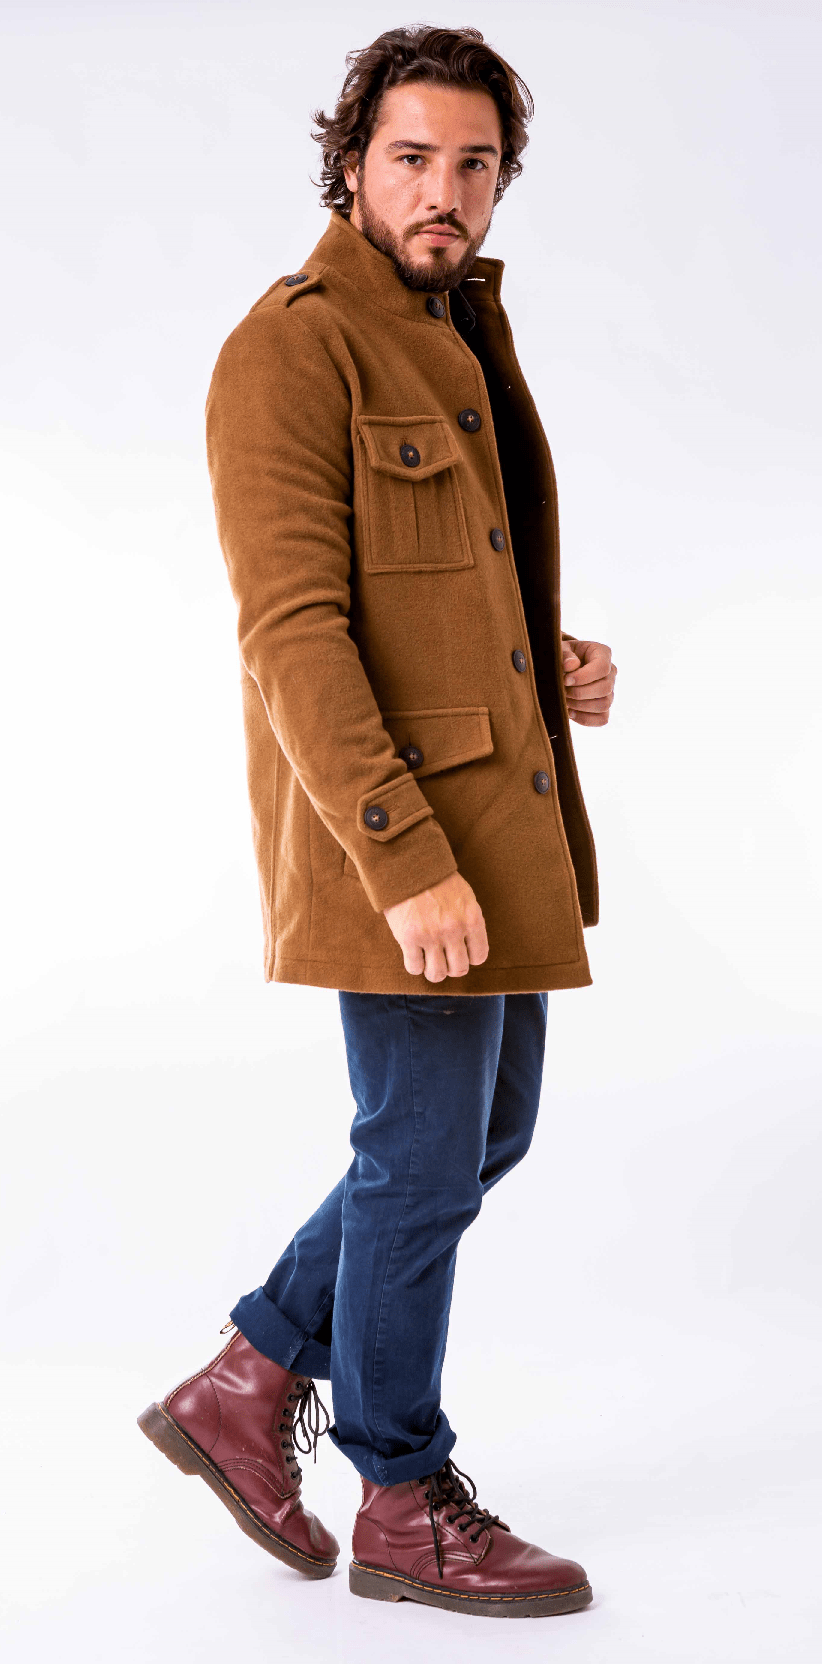 Casaco masculino de lã com botões frontais transpassados marrom